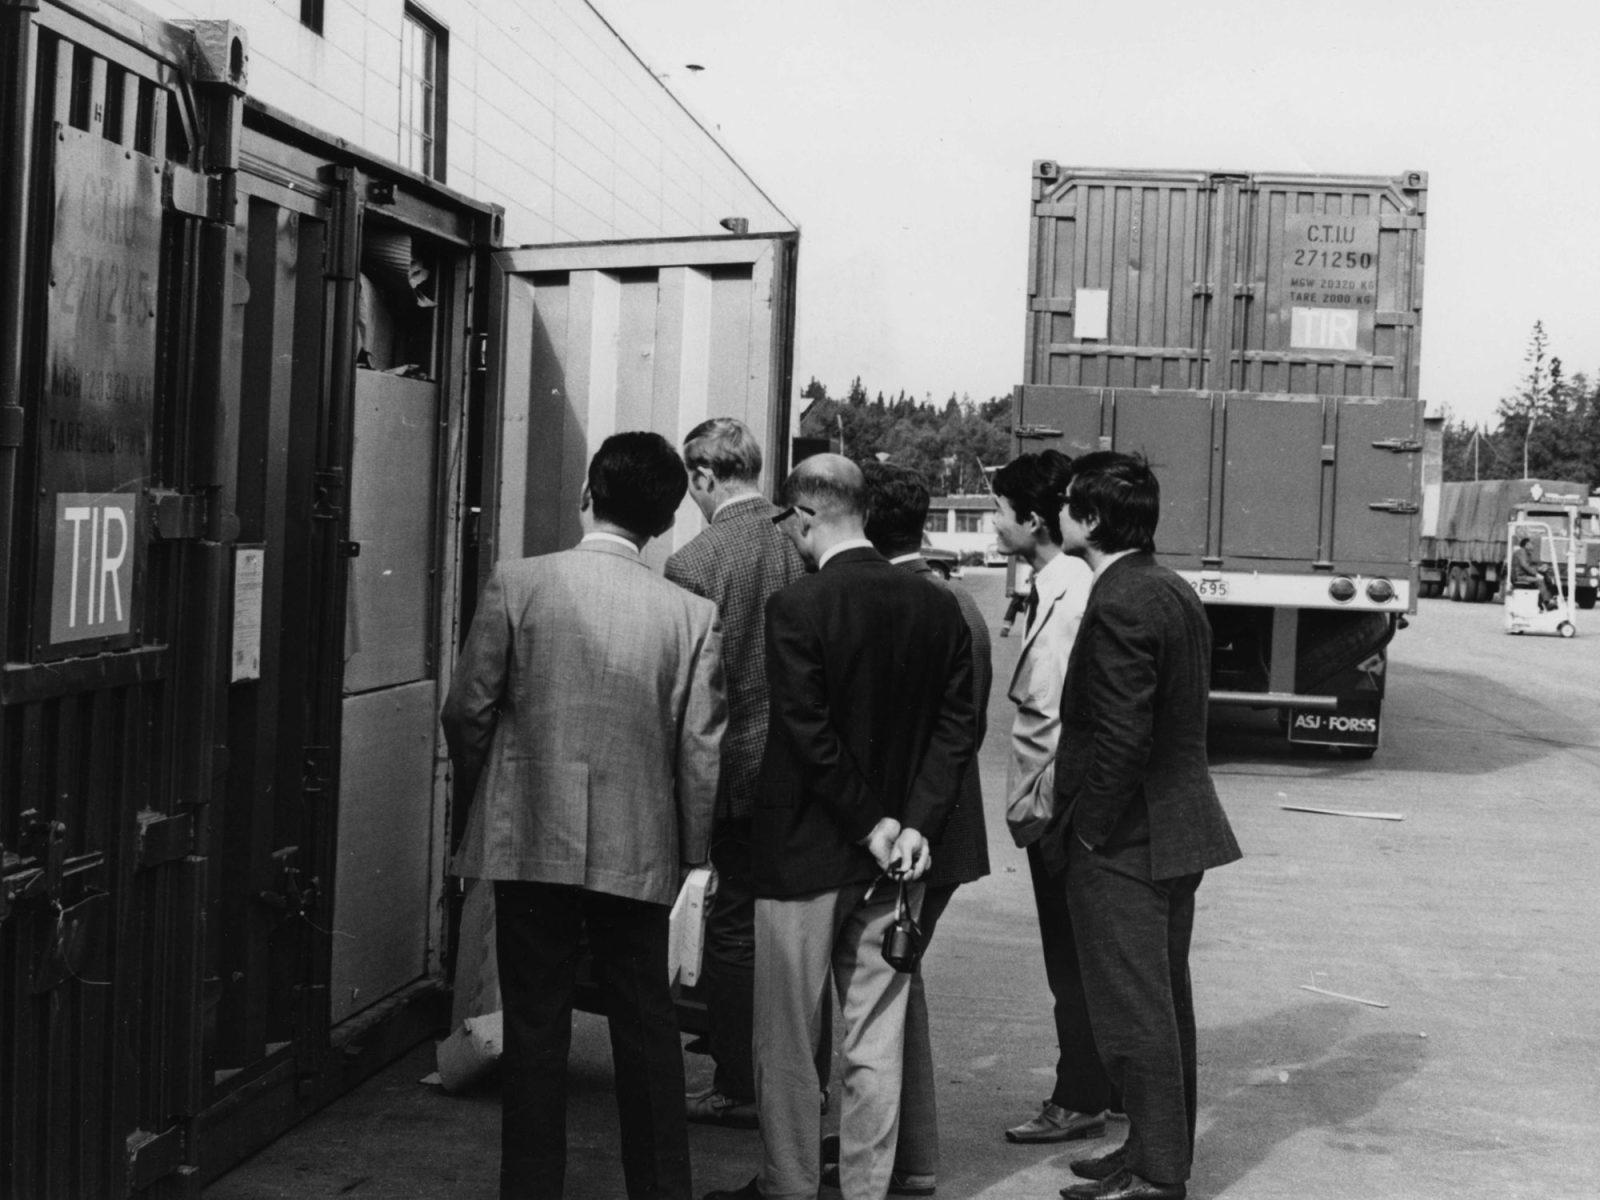 En grupp män i kostymer står i ett industriområde och tittar in i en container.